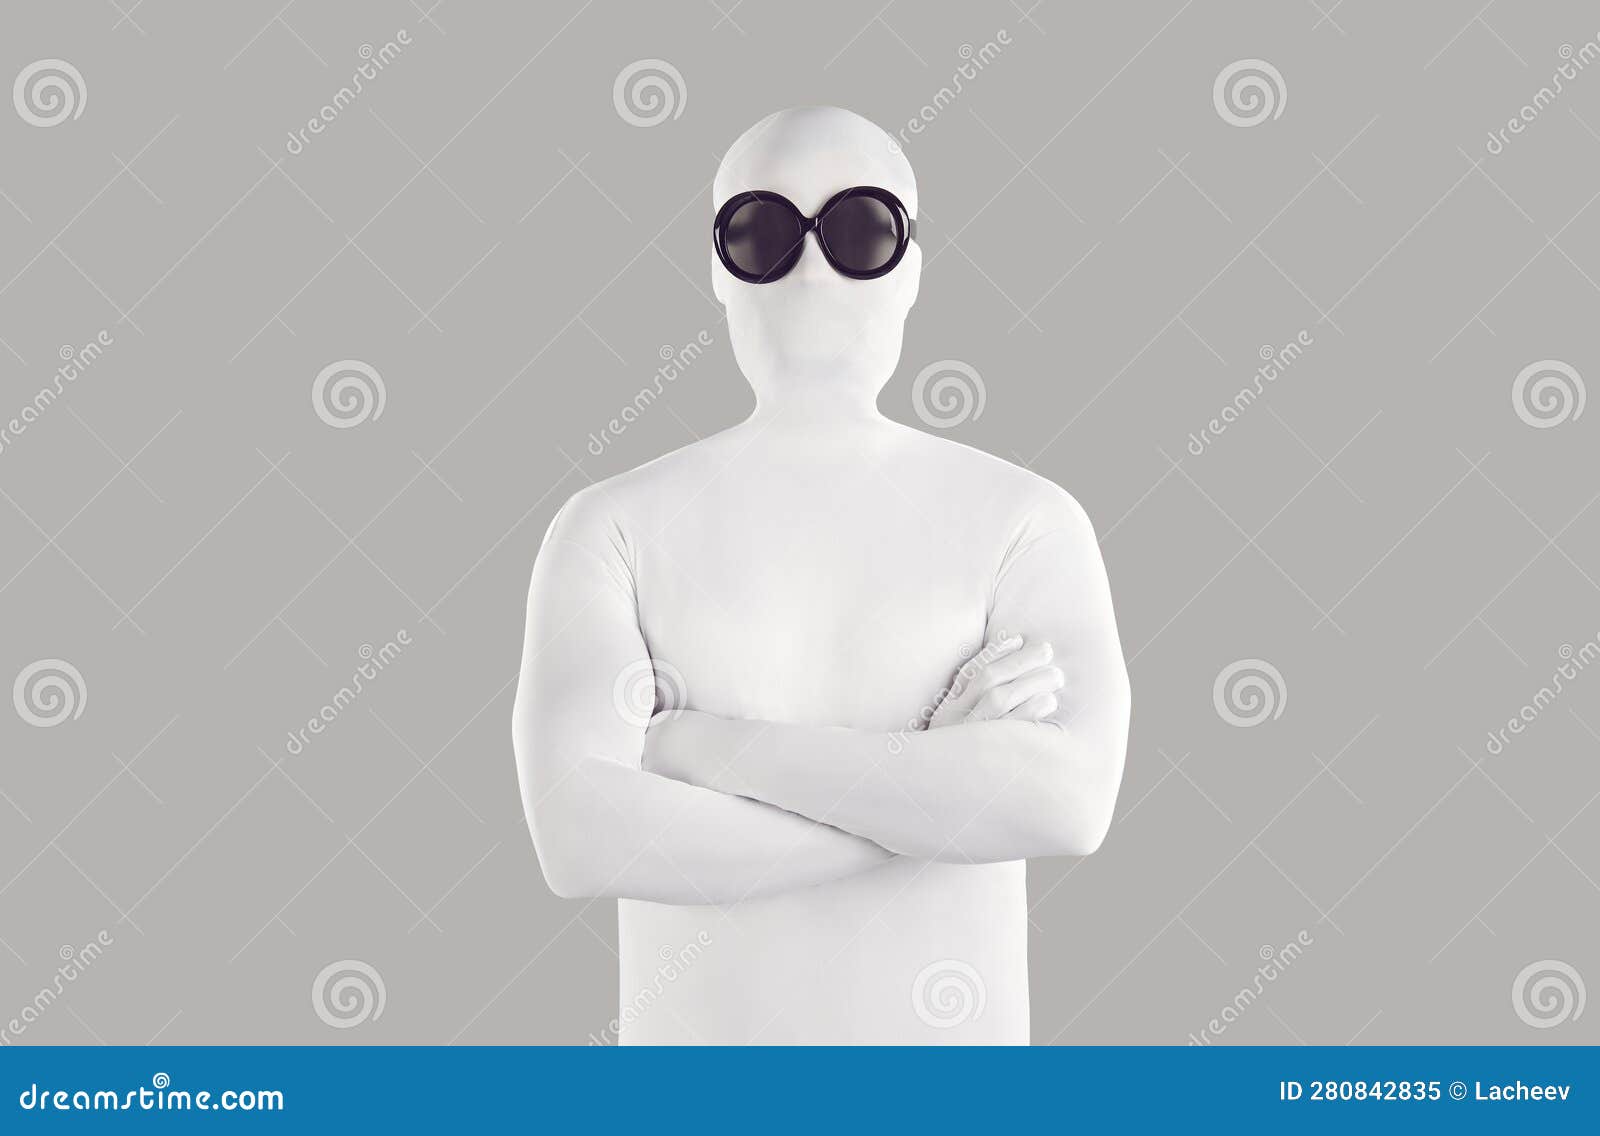 Retrato De Una Persona Con Traje De Uniforme Blanco Y Gafas De Sol